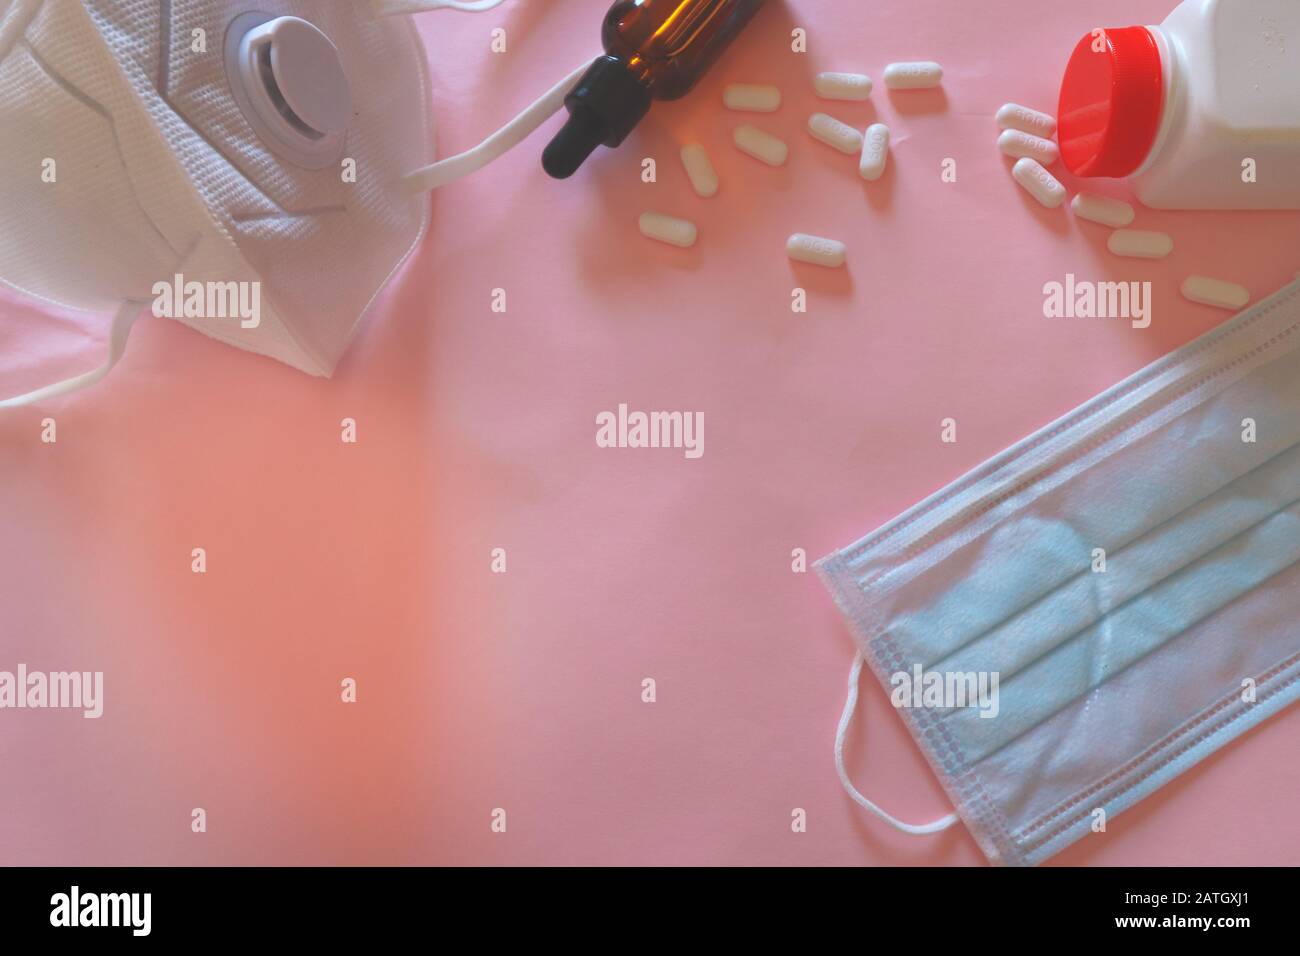 Máscara médica y píldoras de vitamina c en un fondo rosa para mostrar el concepto de control de infecciones, brote de coronavirus (2019-nCoV) y curación global Foto de stock